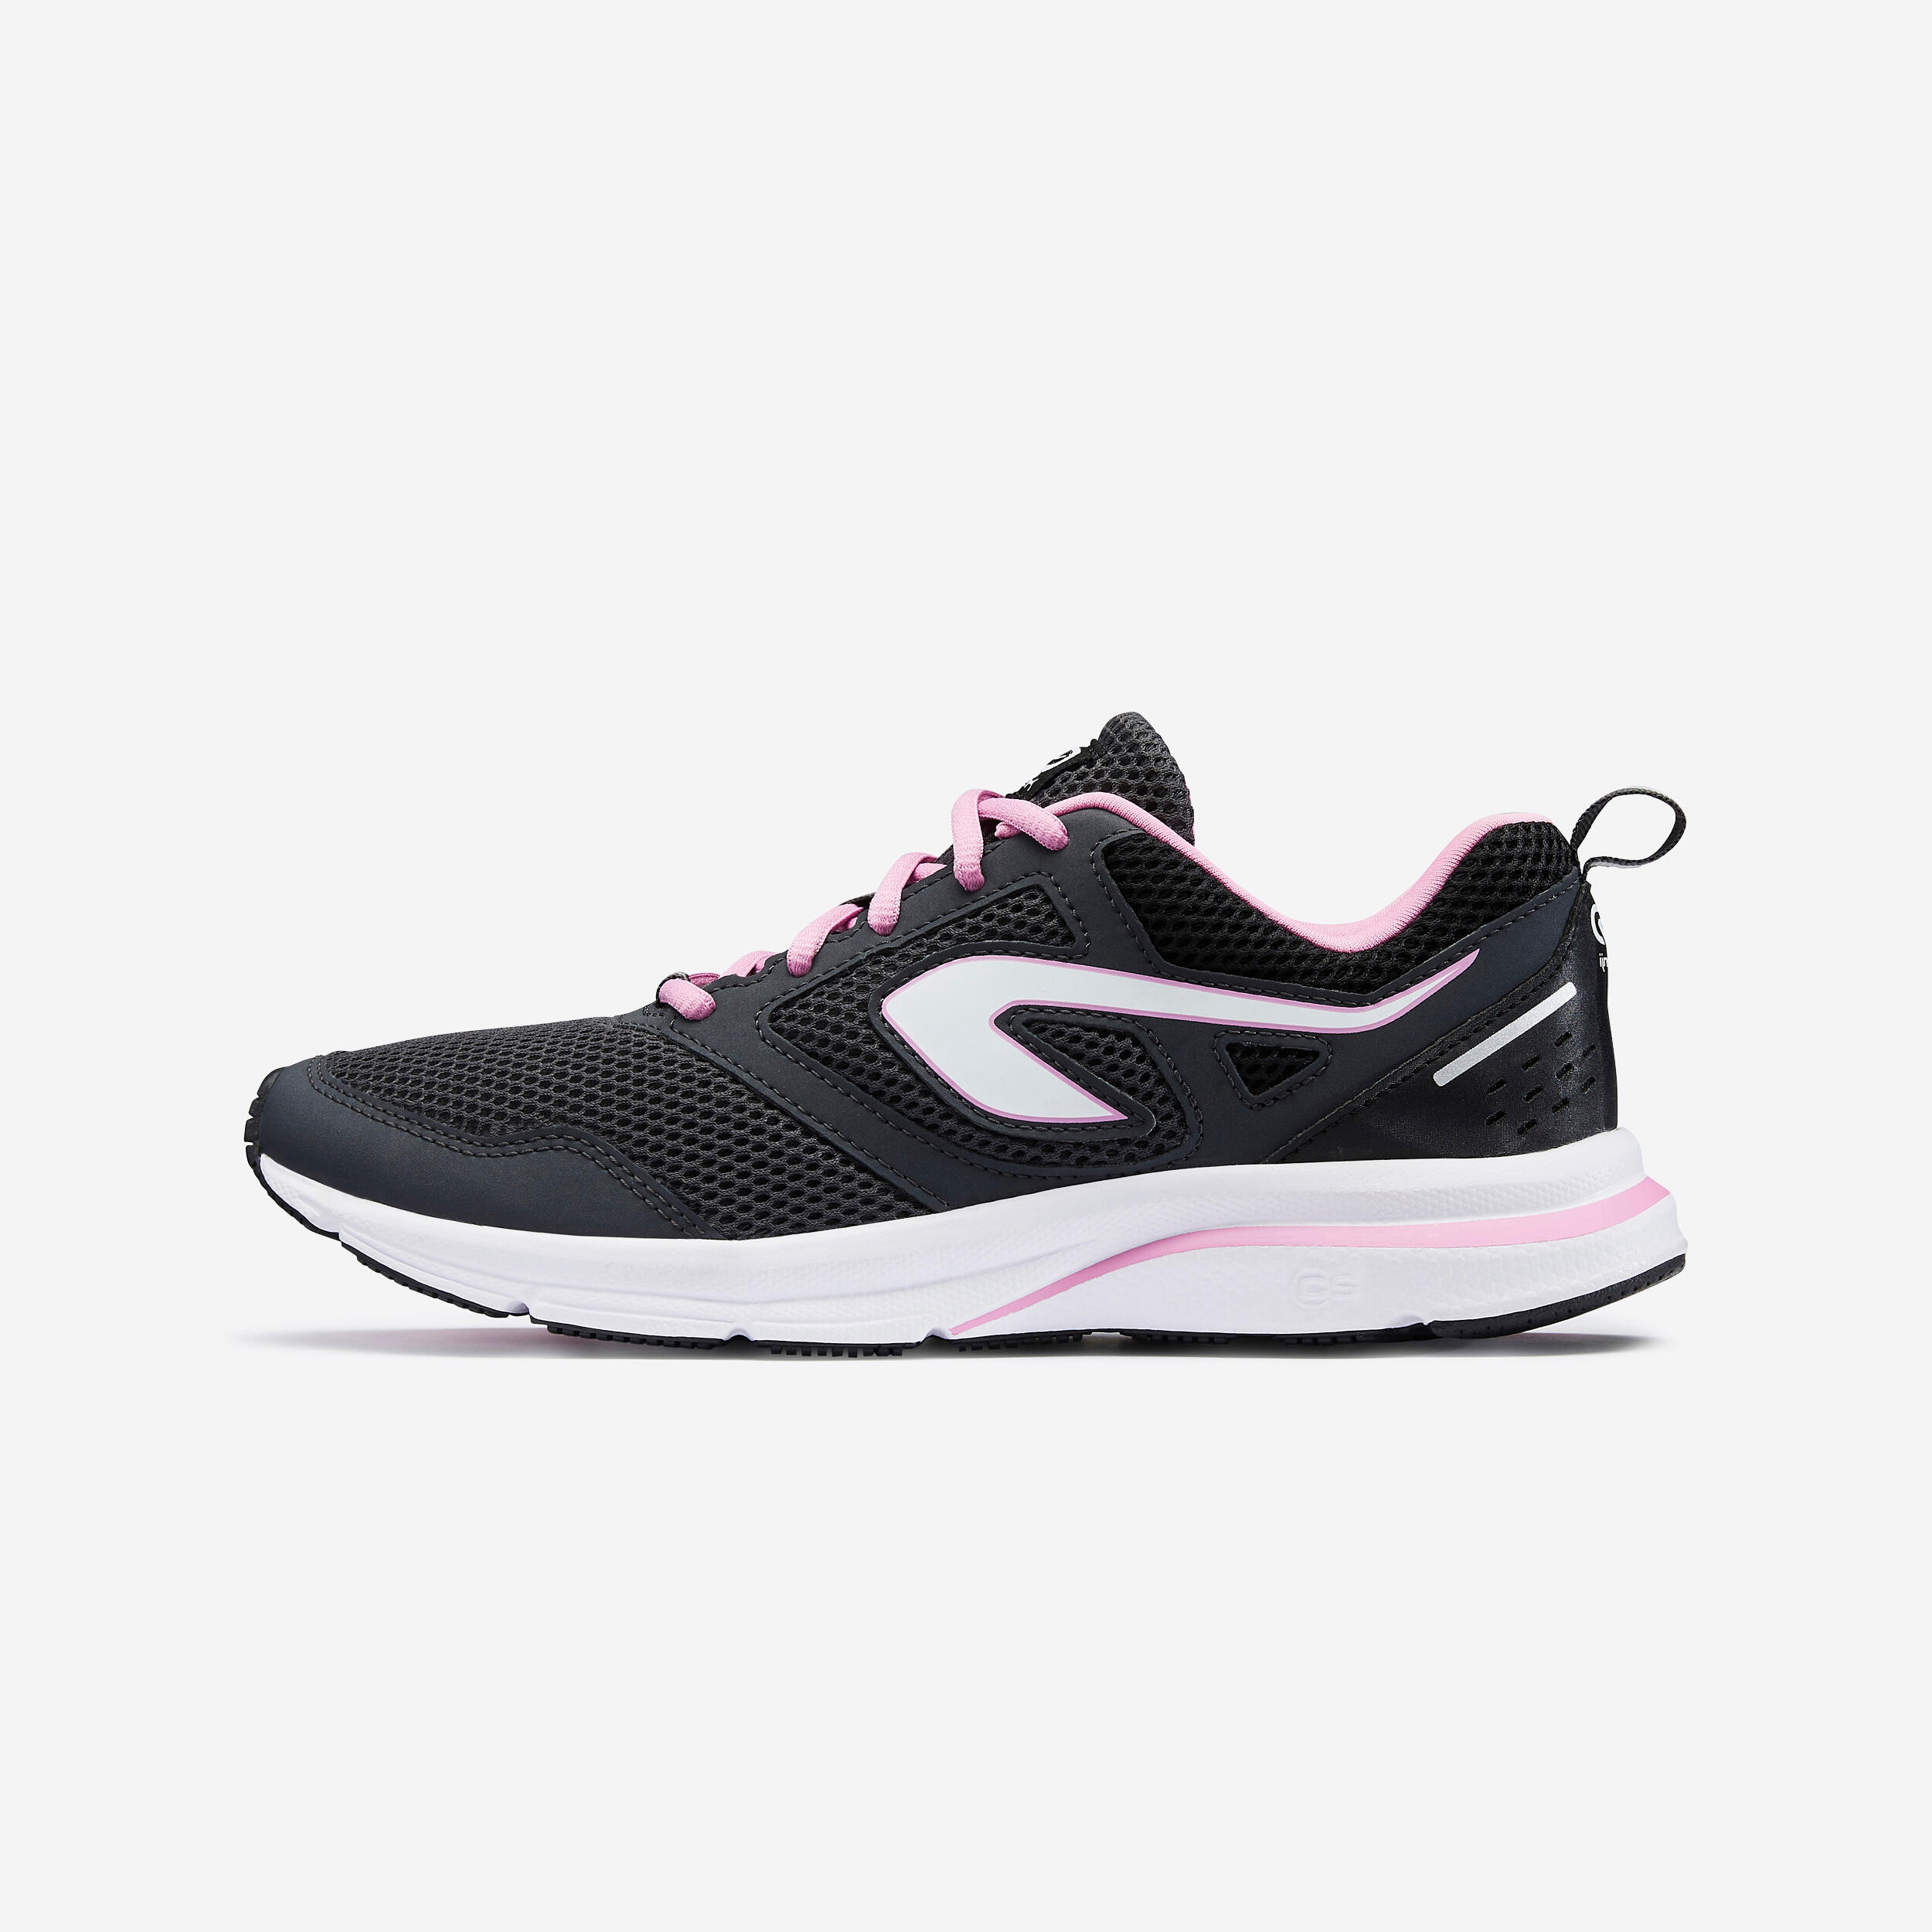 chaussures de running femme kalenji run active noir rose - kalenji